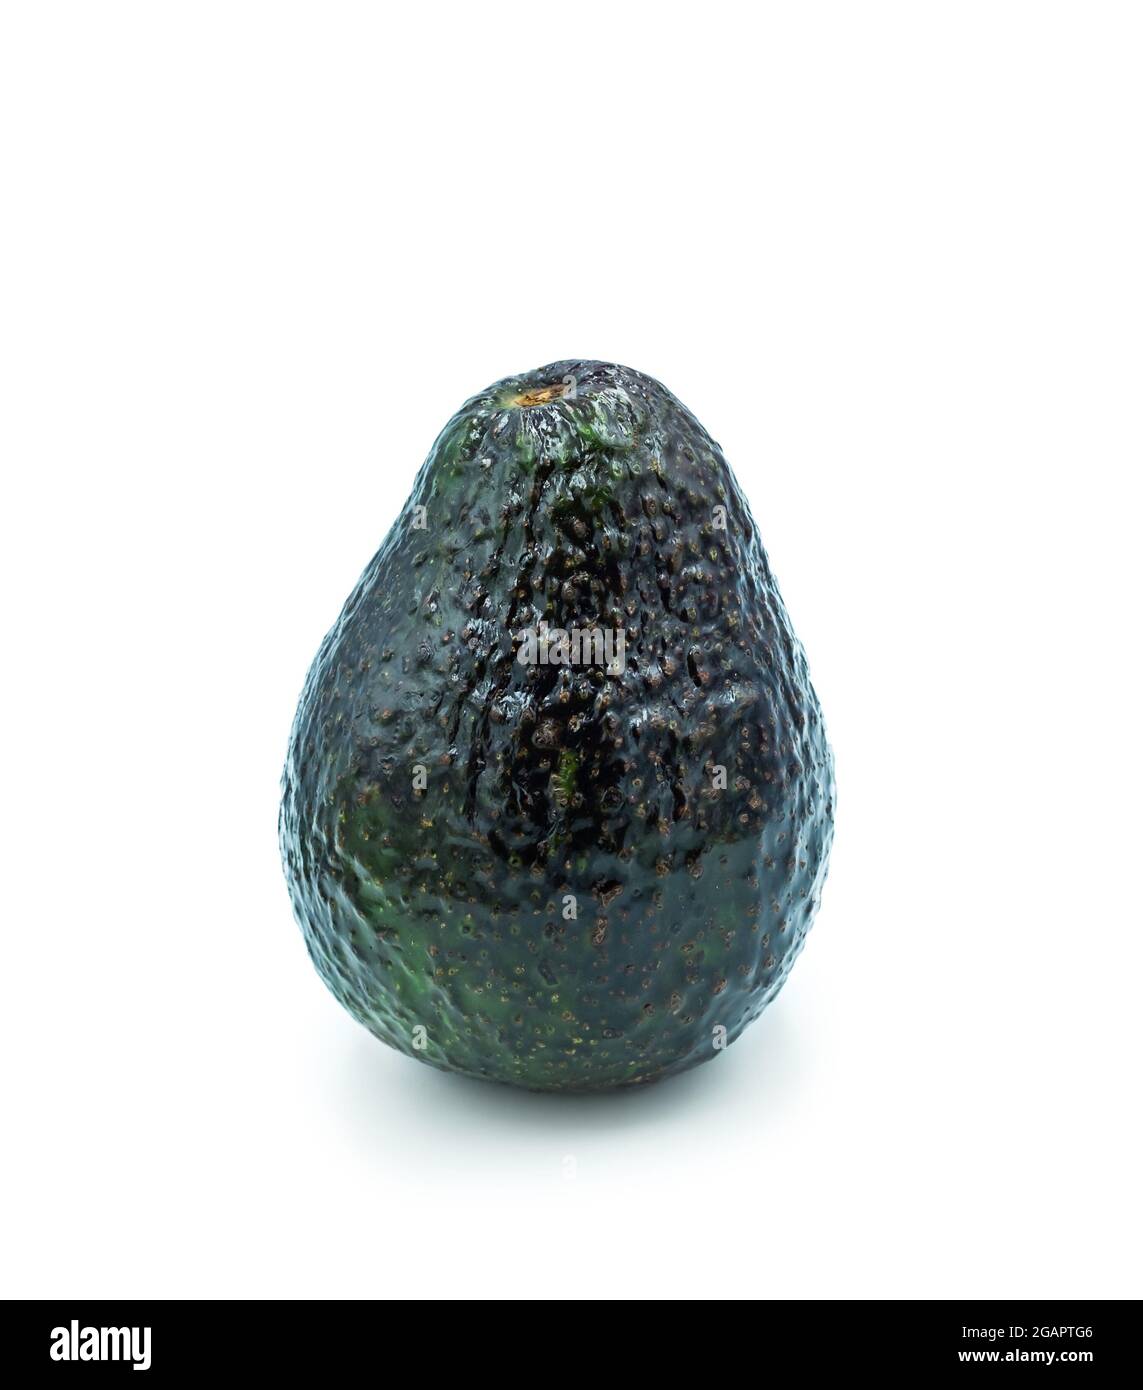 Frisches Gemüse. Avocado isoliert auf weißem Hintergrund. Eine grüne birnenförmige Frucht. Stockfoto